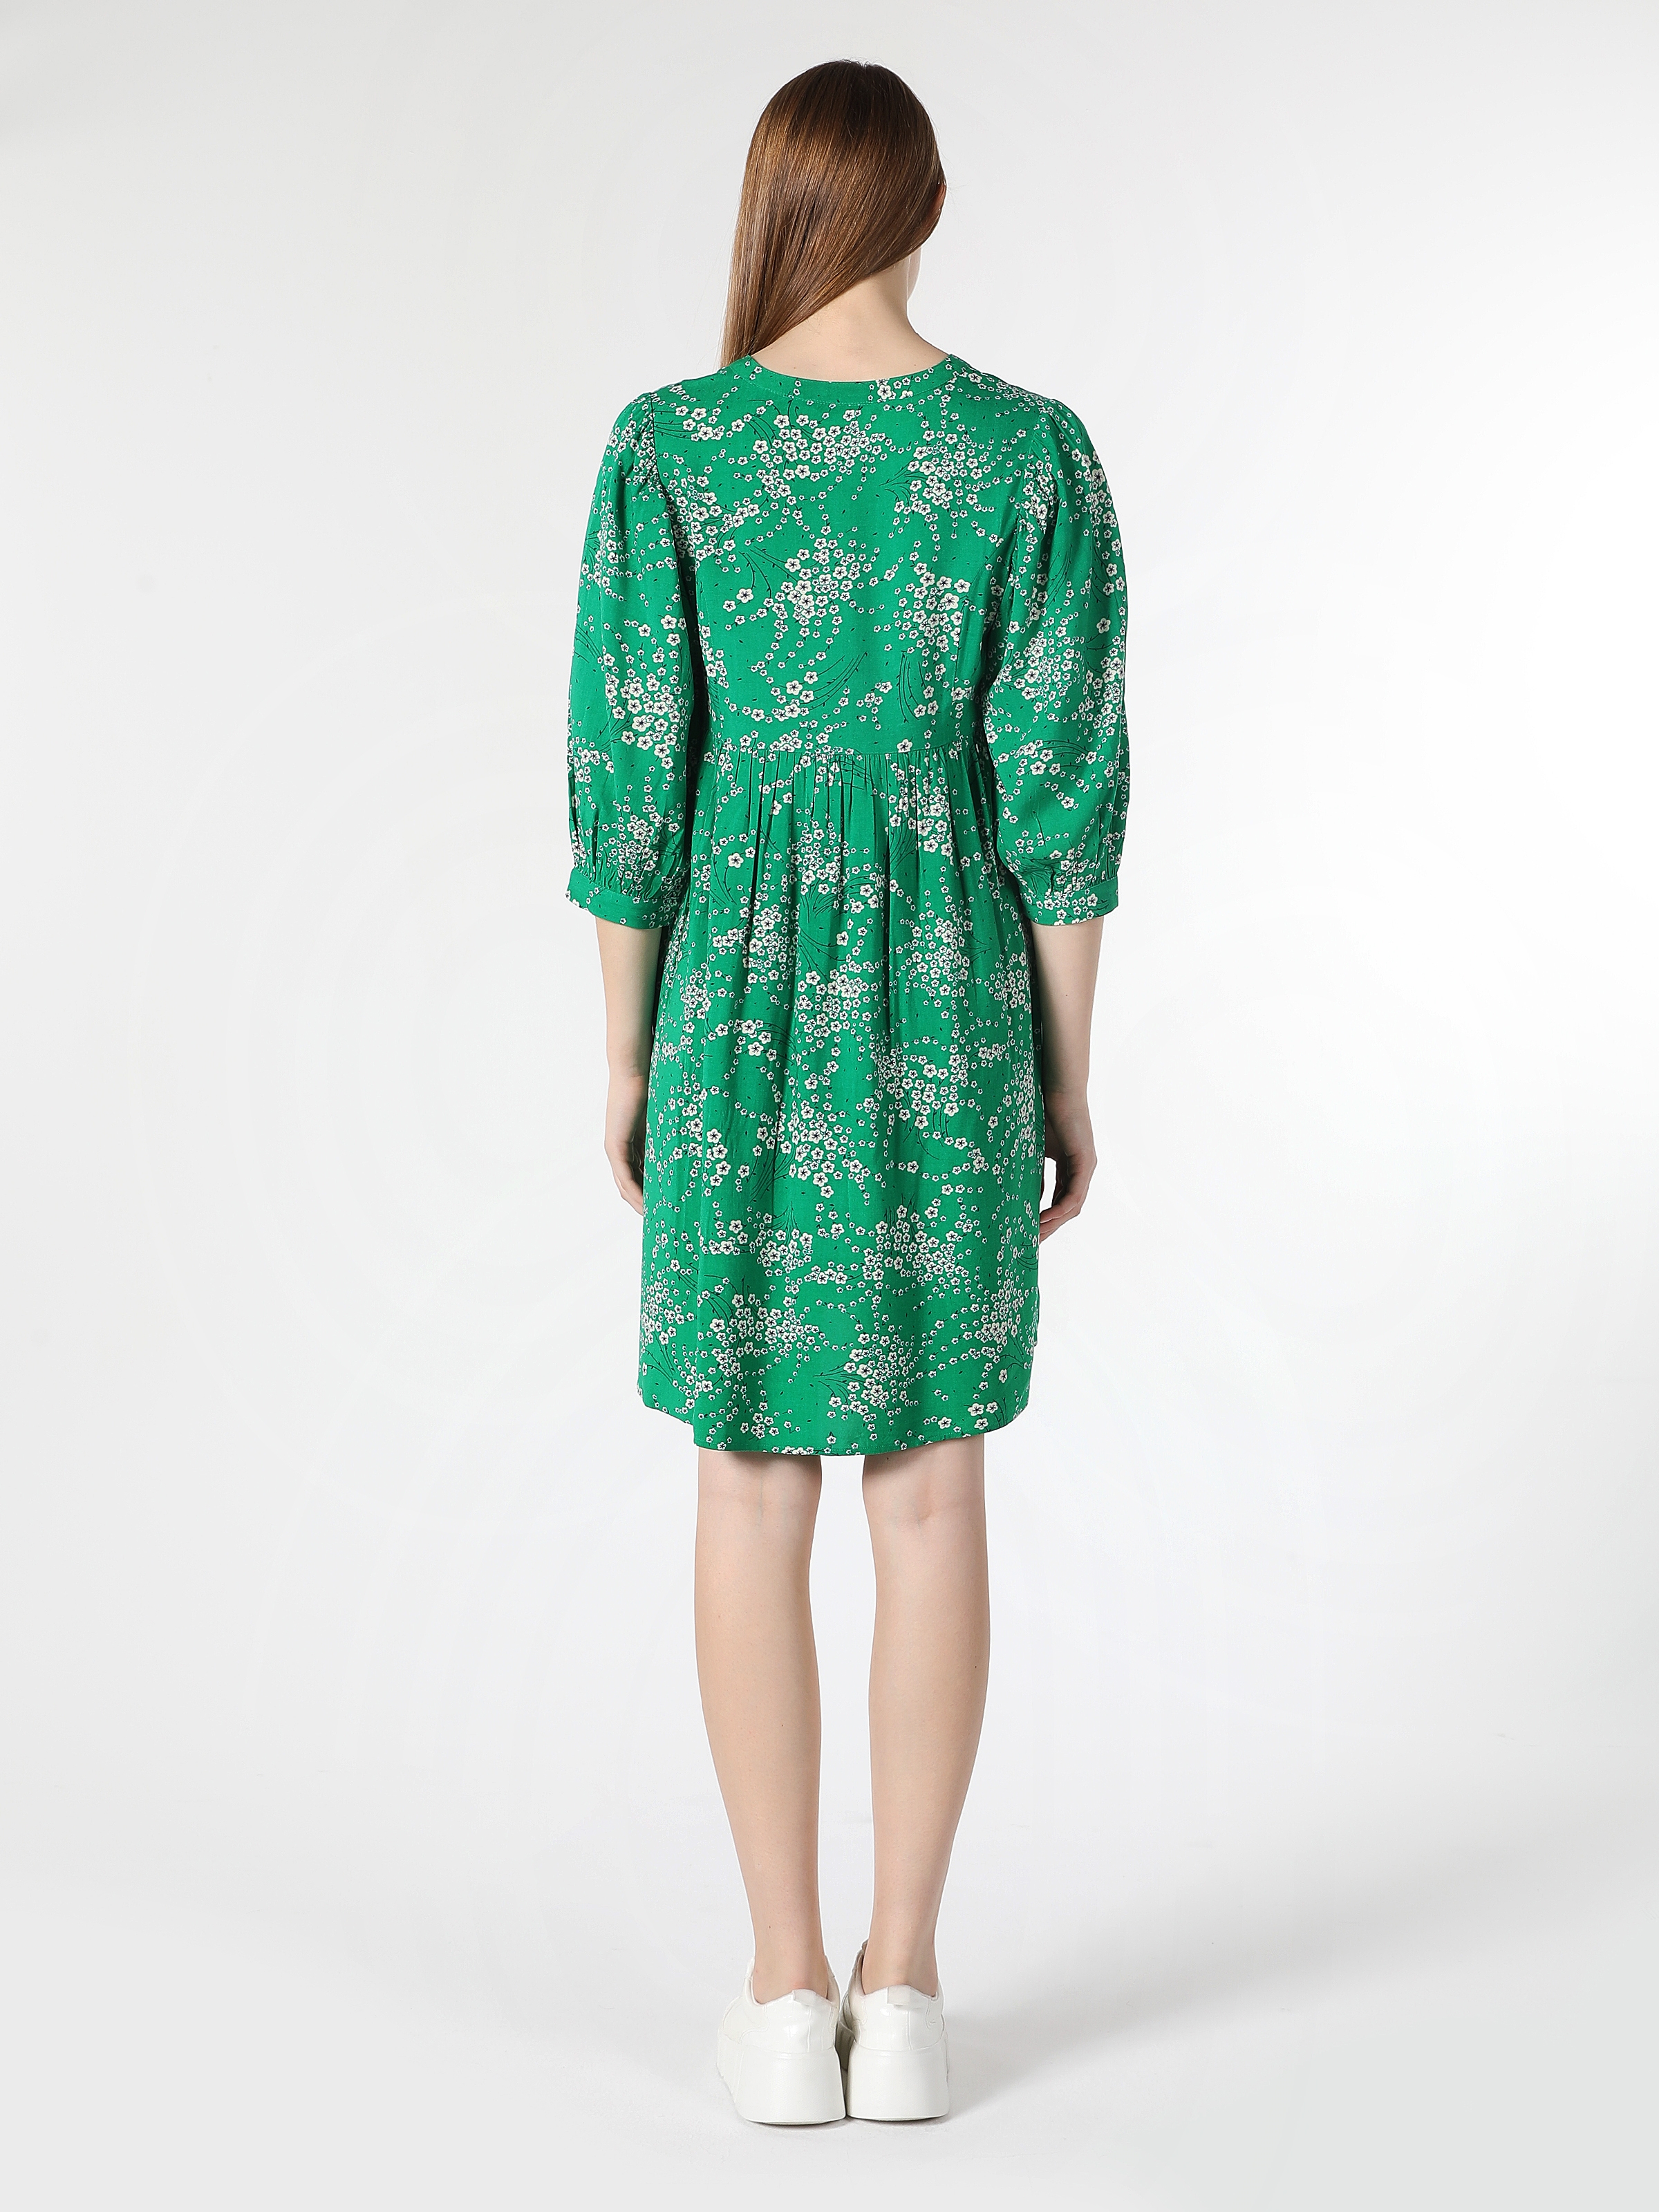 Показати інформацію про Сукня Жіноча Зелена З Квітковим Принтом Класичного Крою Cl1061886